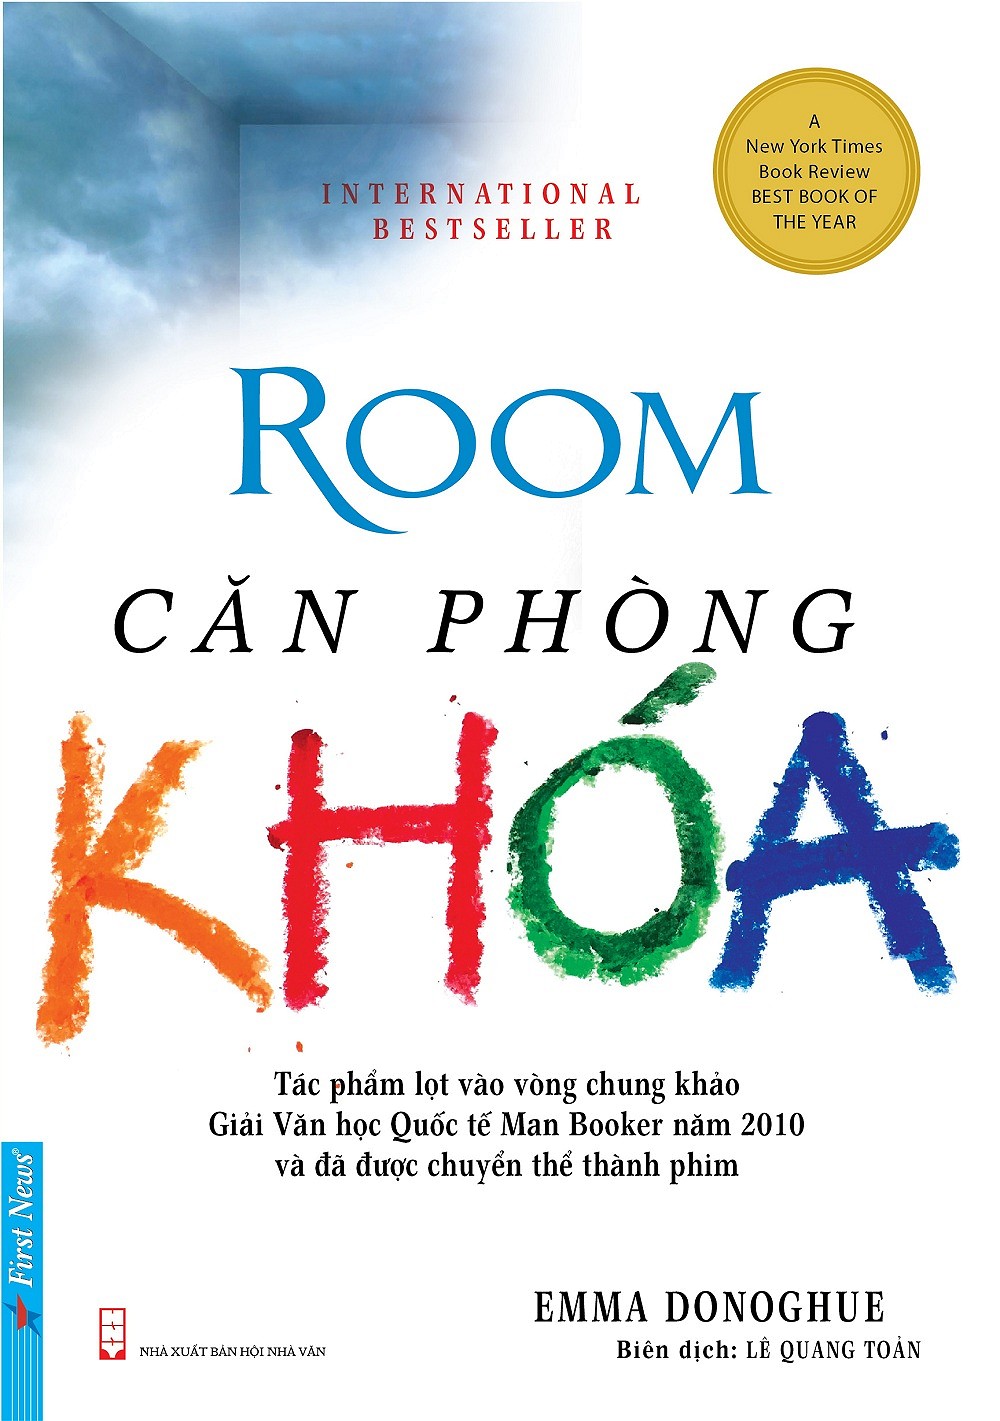 Căn Phòng Khóa (Best Book of The Year)